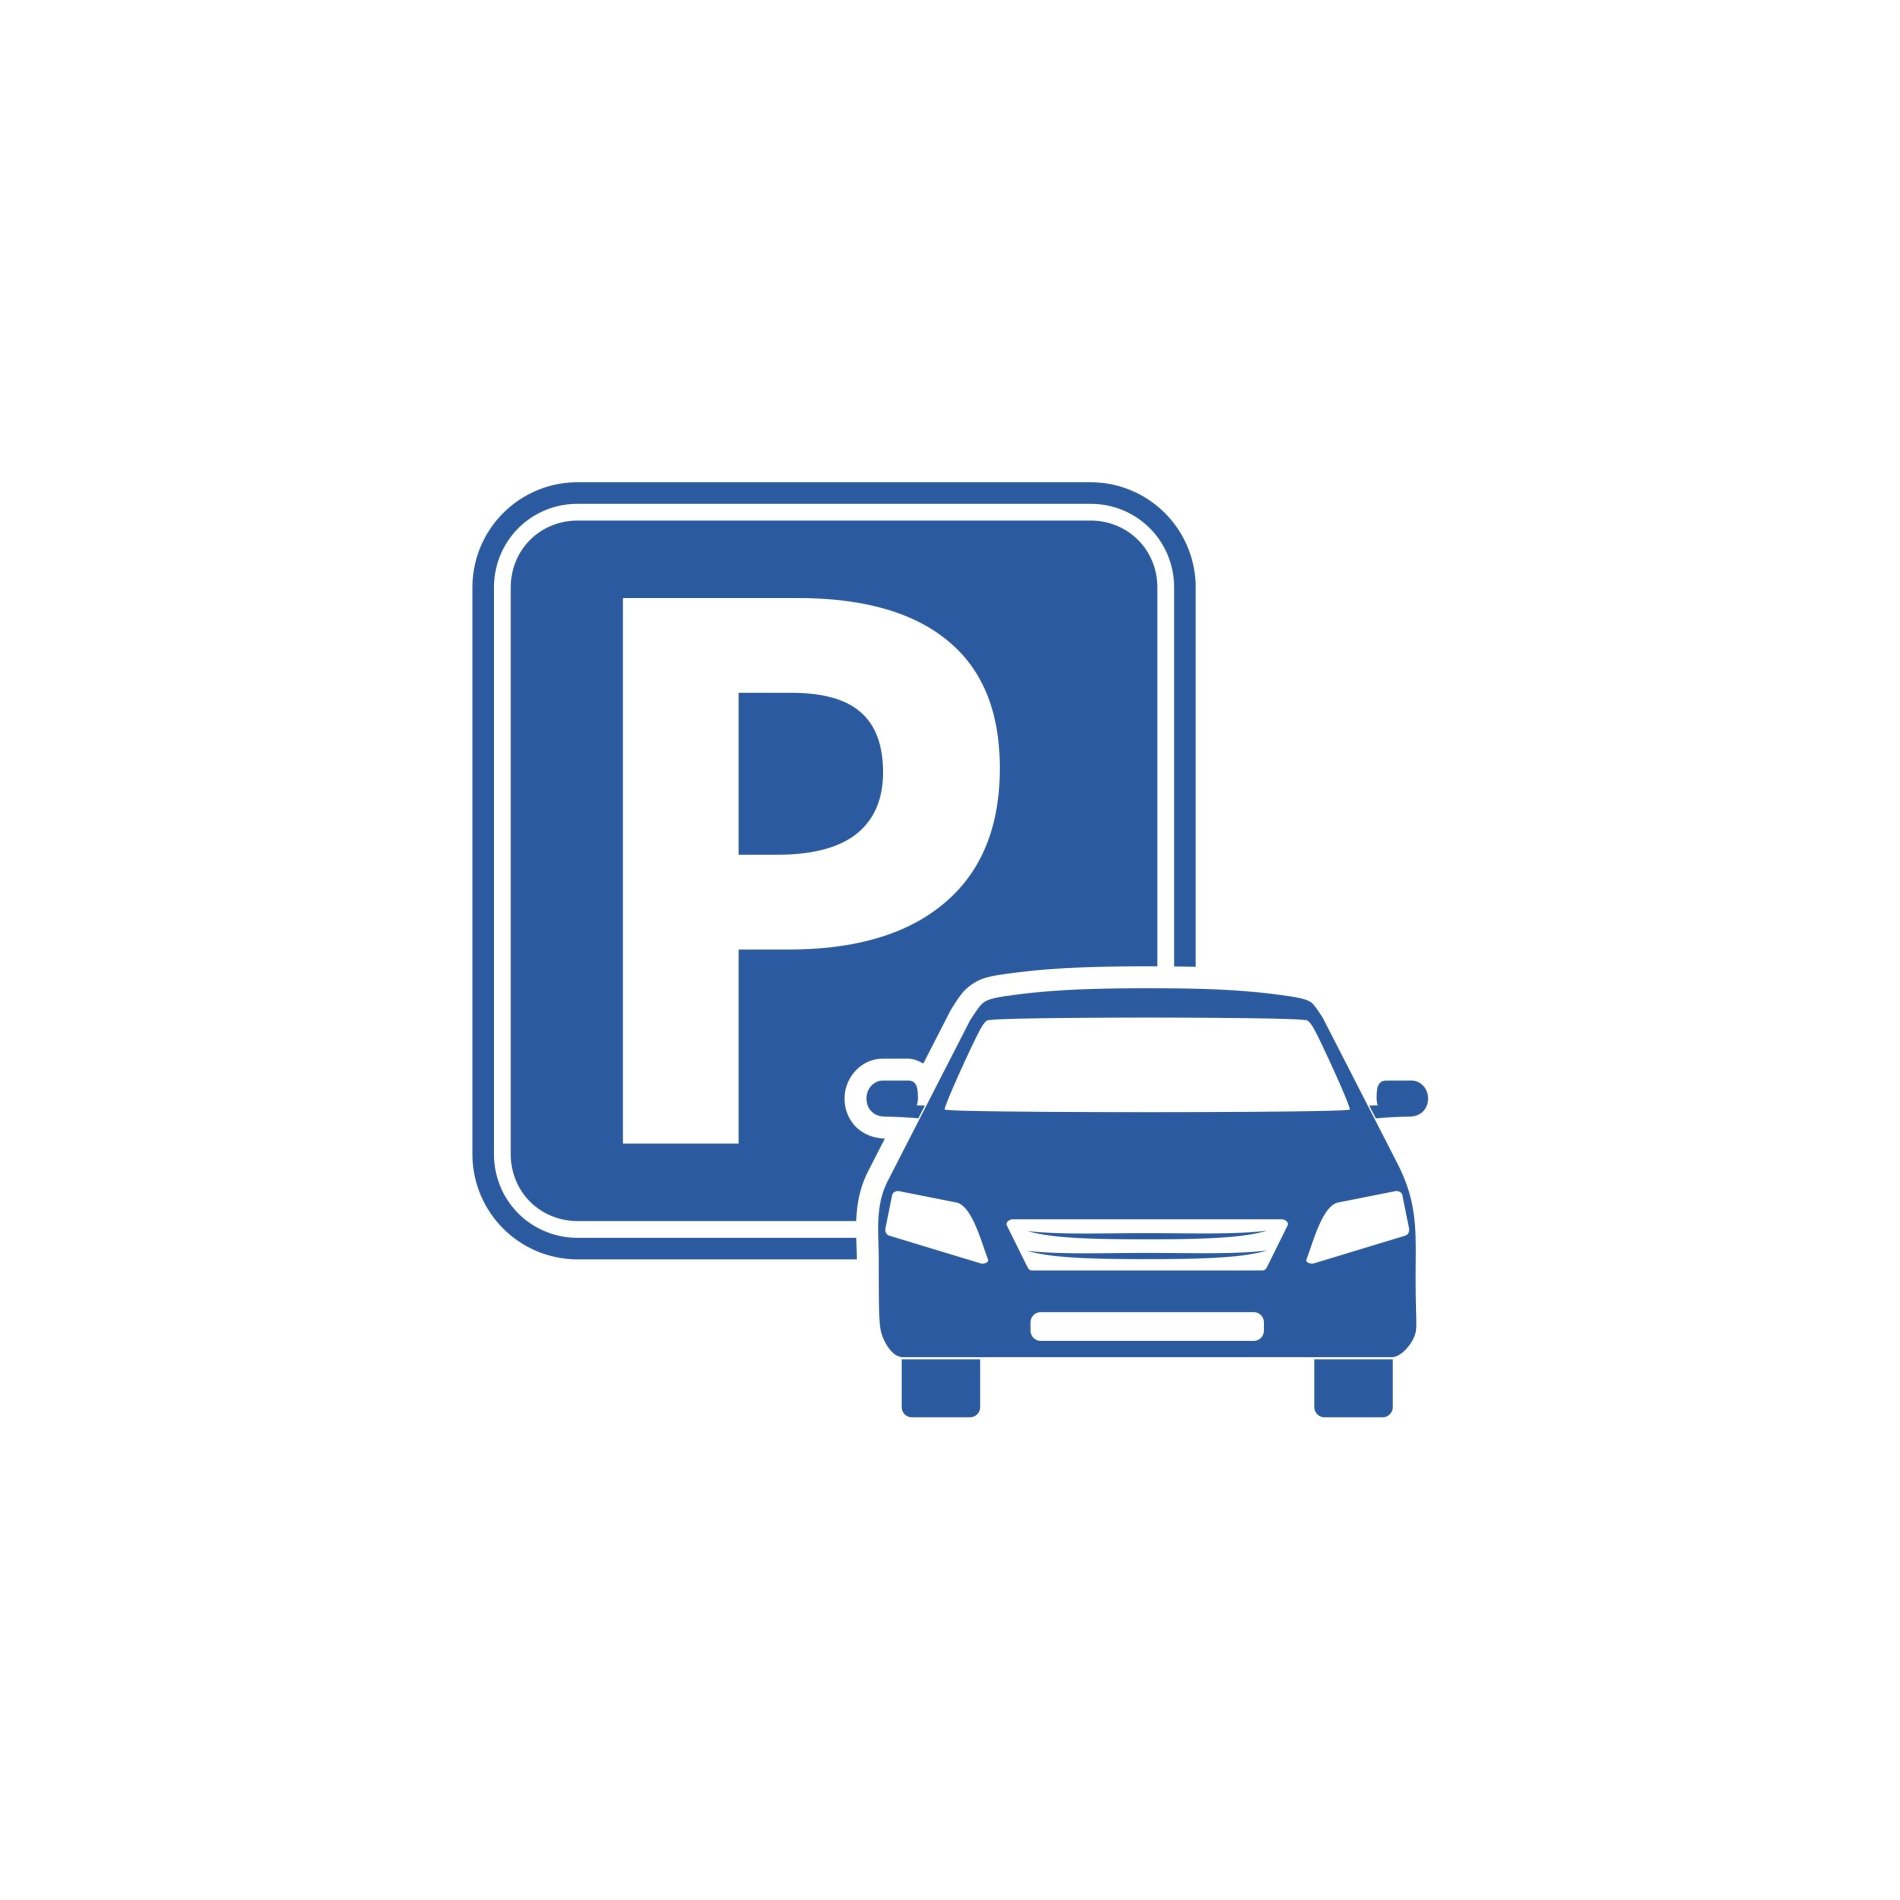 Parkplatzzeichen und Fahrzeug beides in blau.